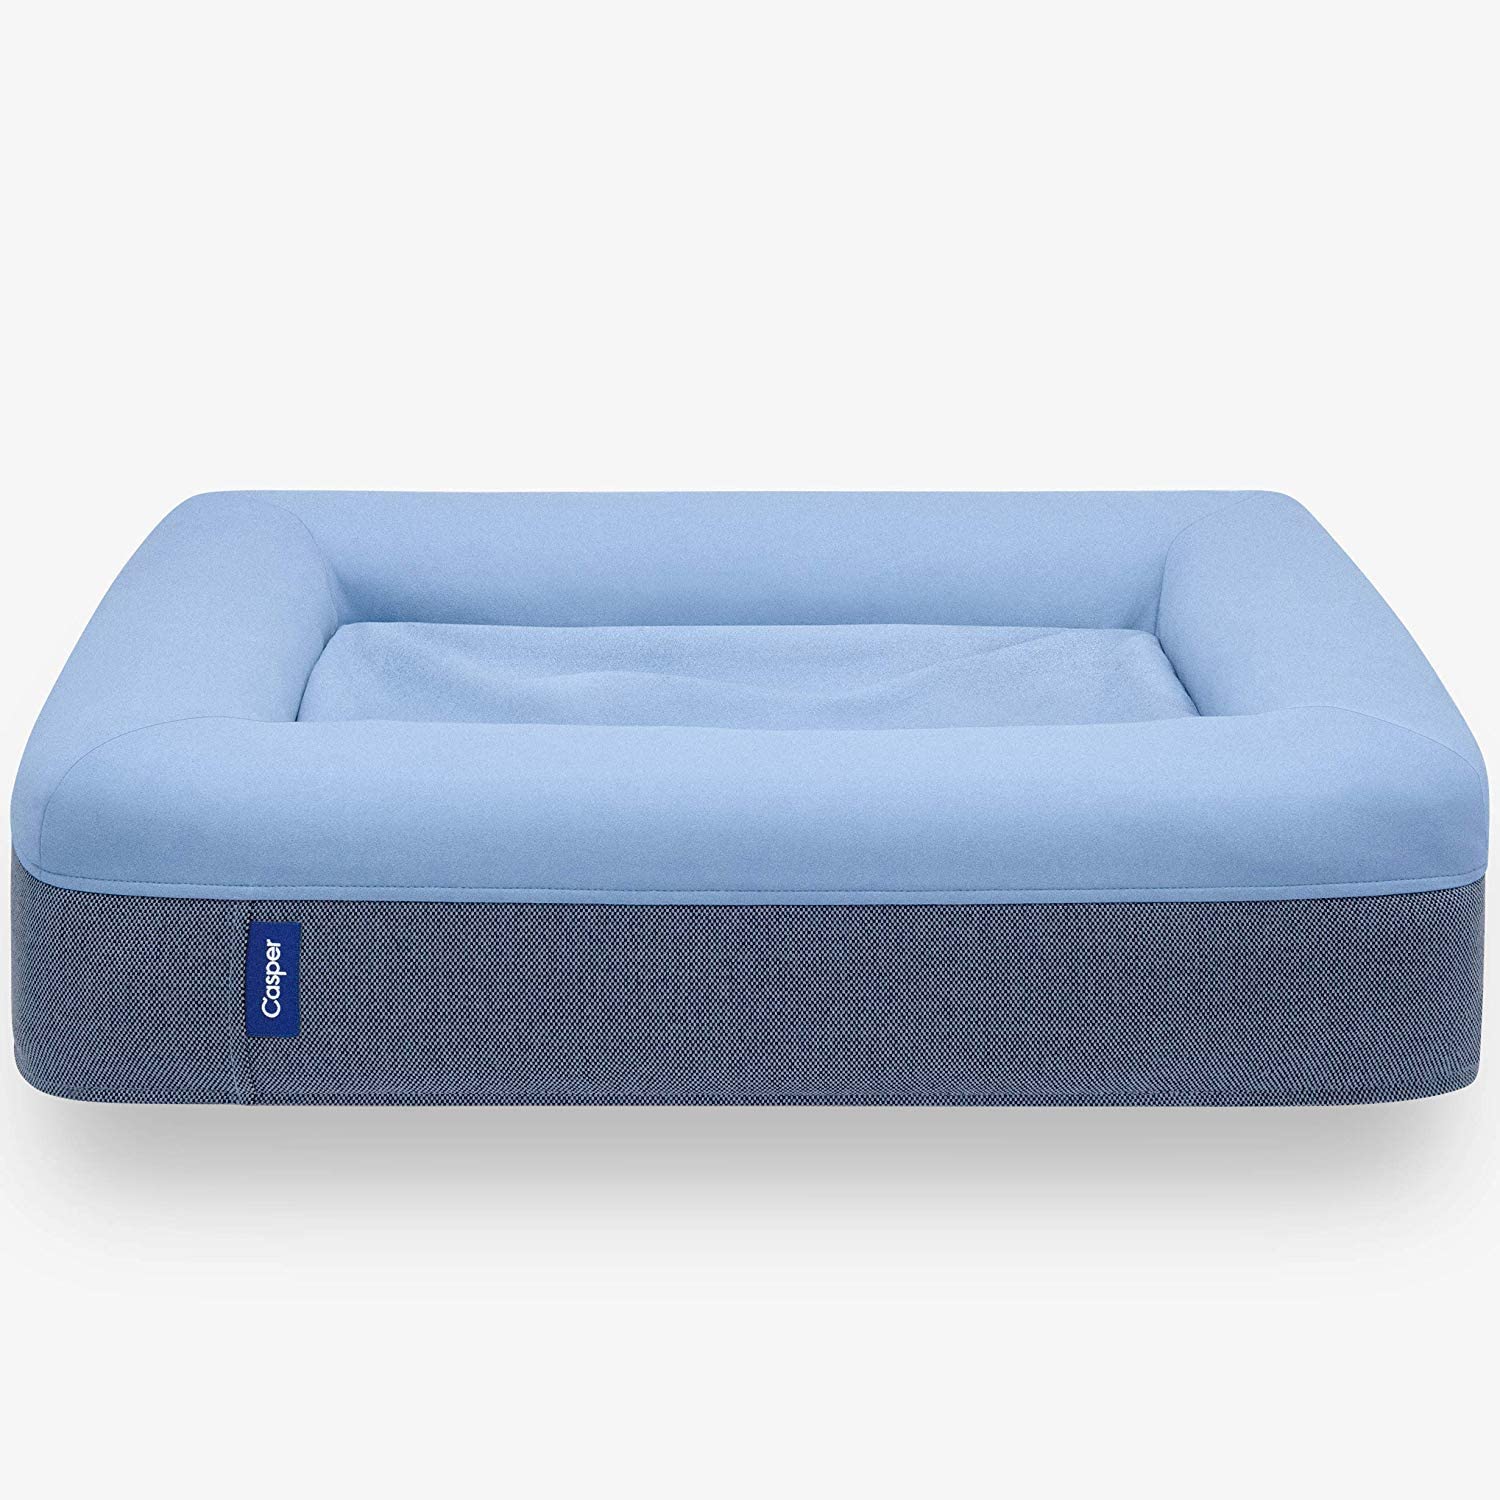 Casper Small Size Blue Dog Bed